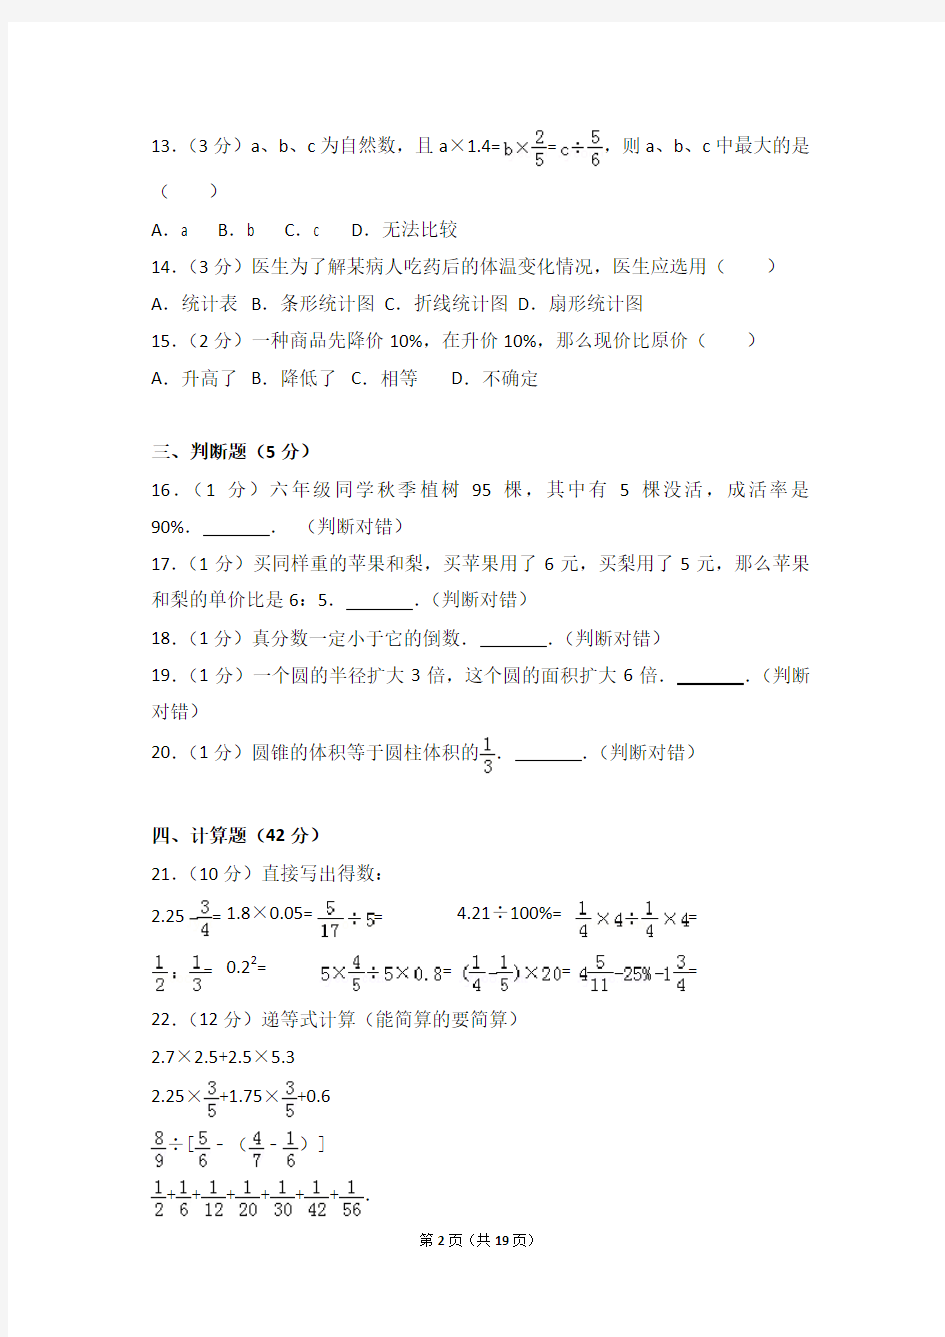 【真题】2013年广东省东莞市翰林实验学校小升初数学试卷及解析